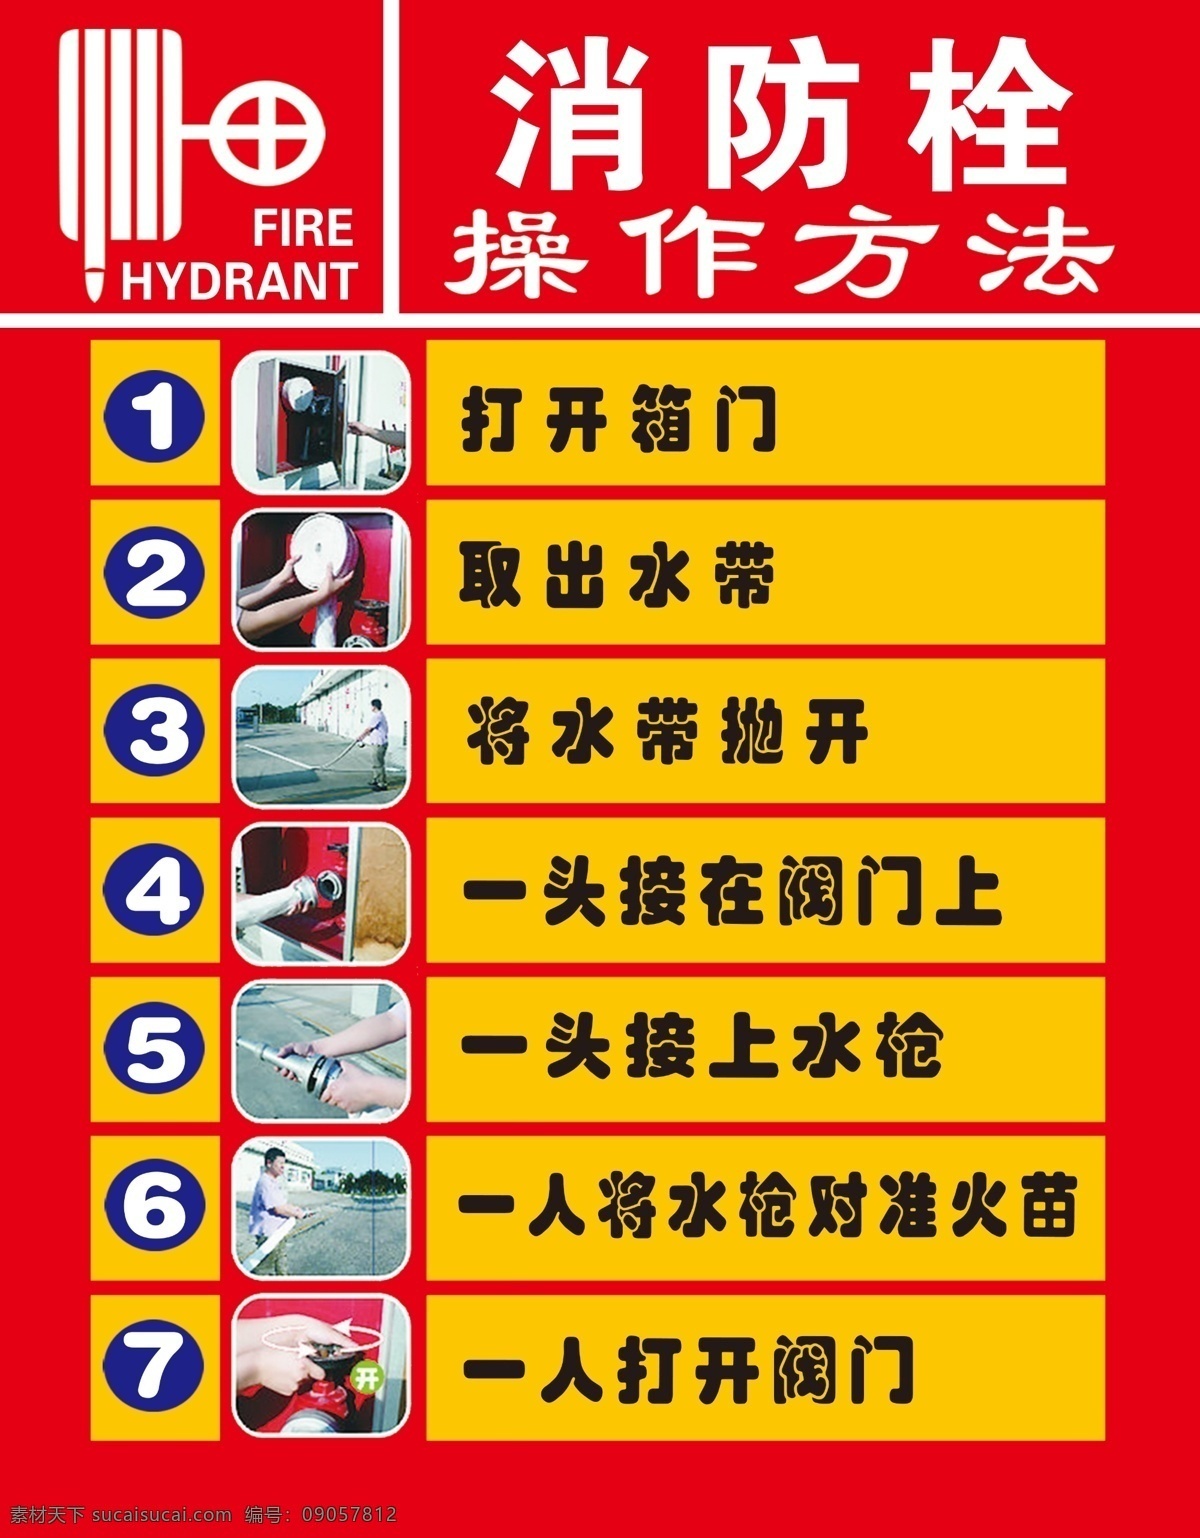 消防栓七步法 消防栓 七步法 消防栓使用 消防 消防栓操作法 消防栓7步法